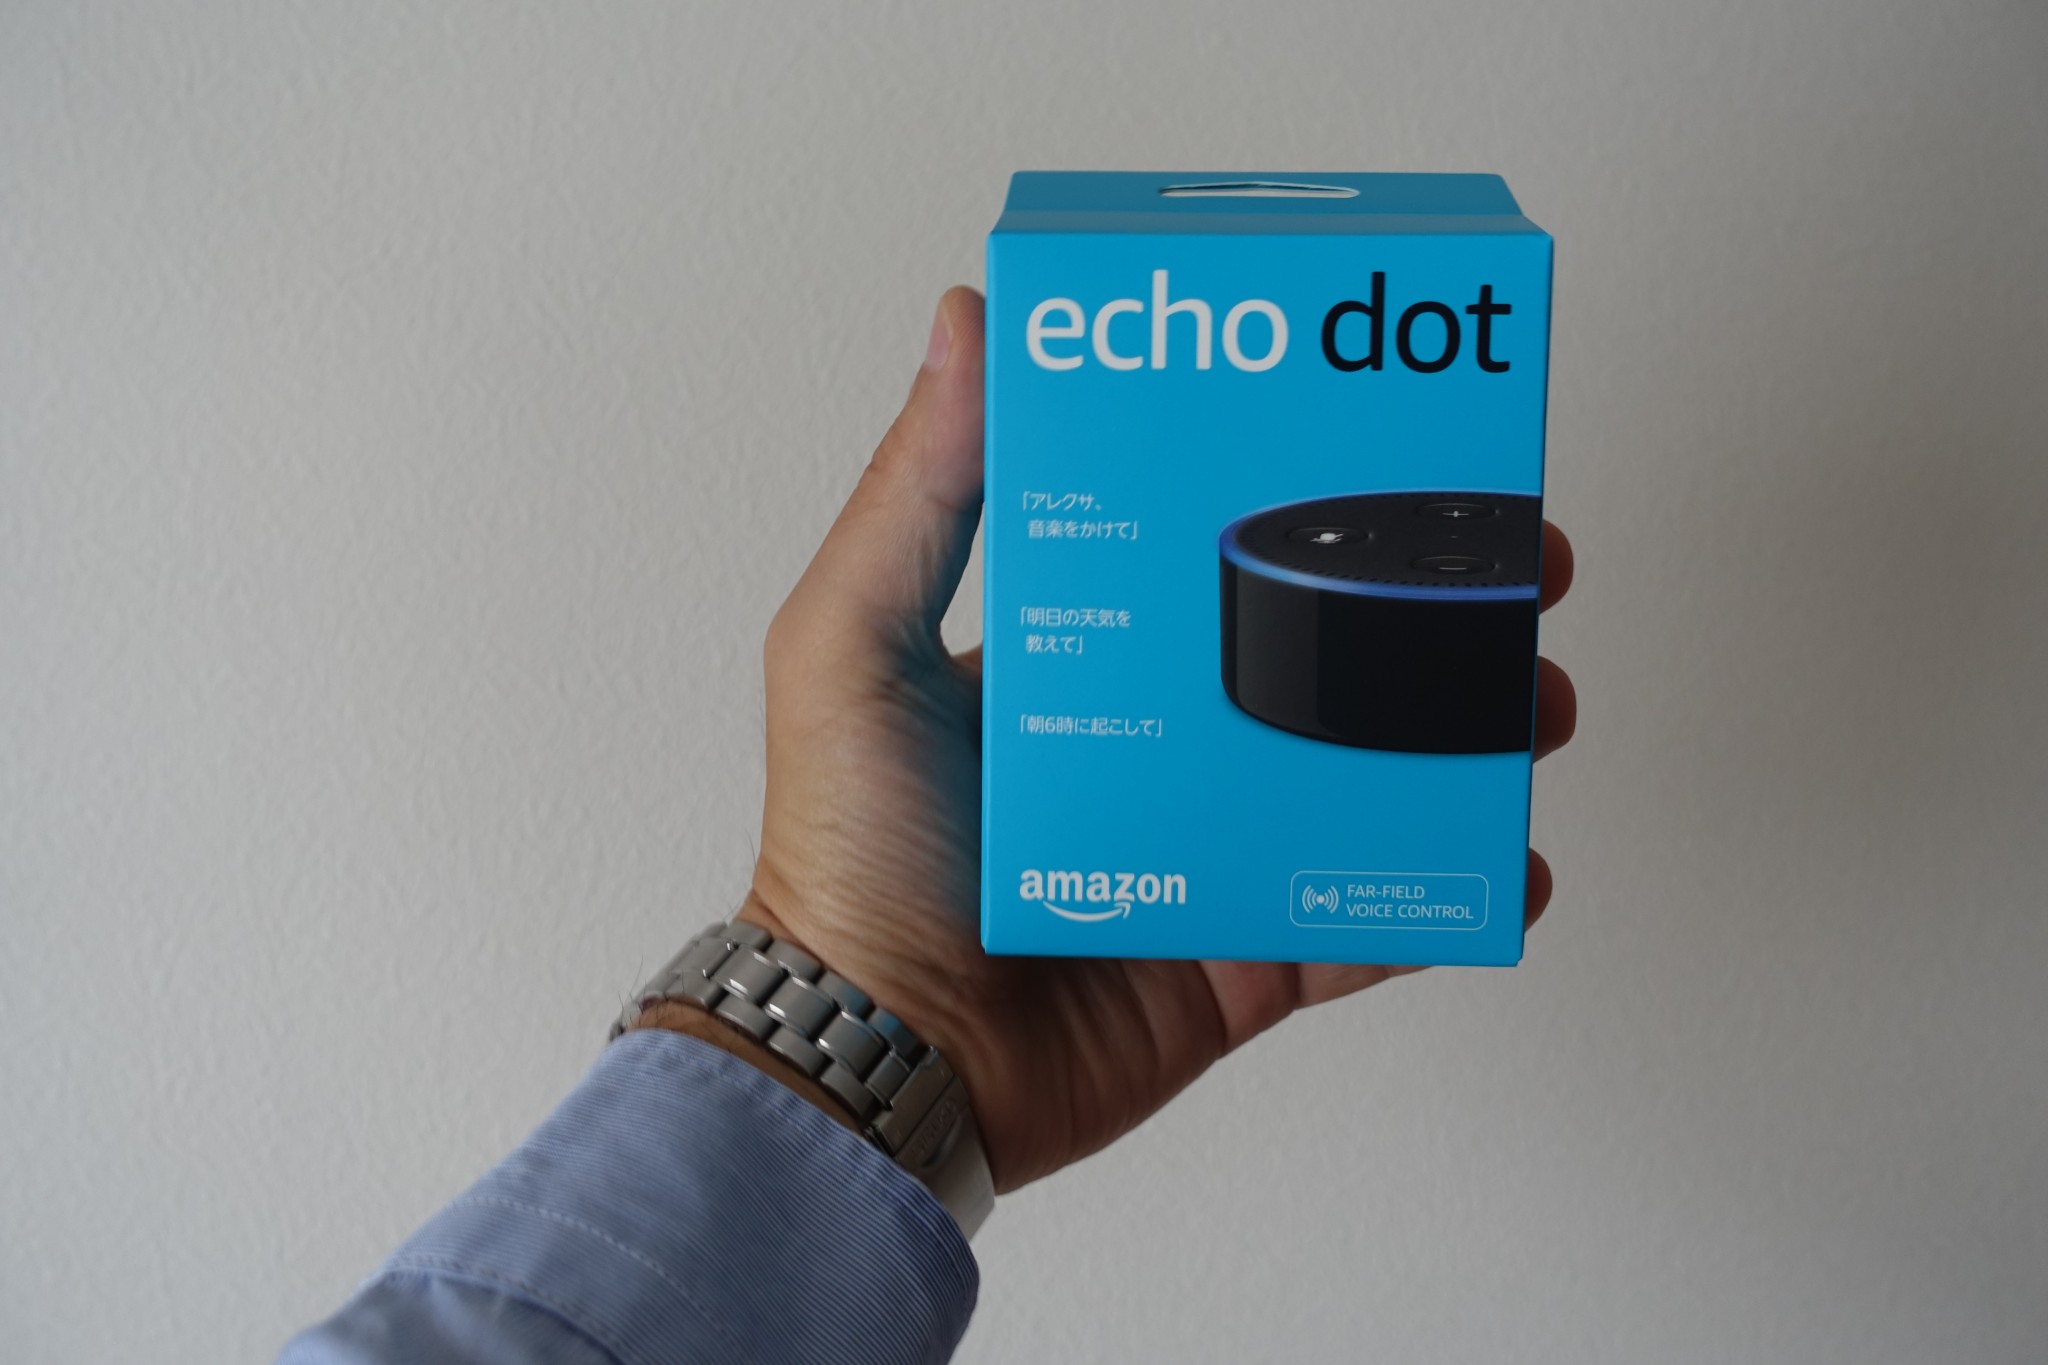 echo dotの箱はコンパクト